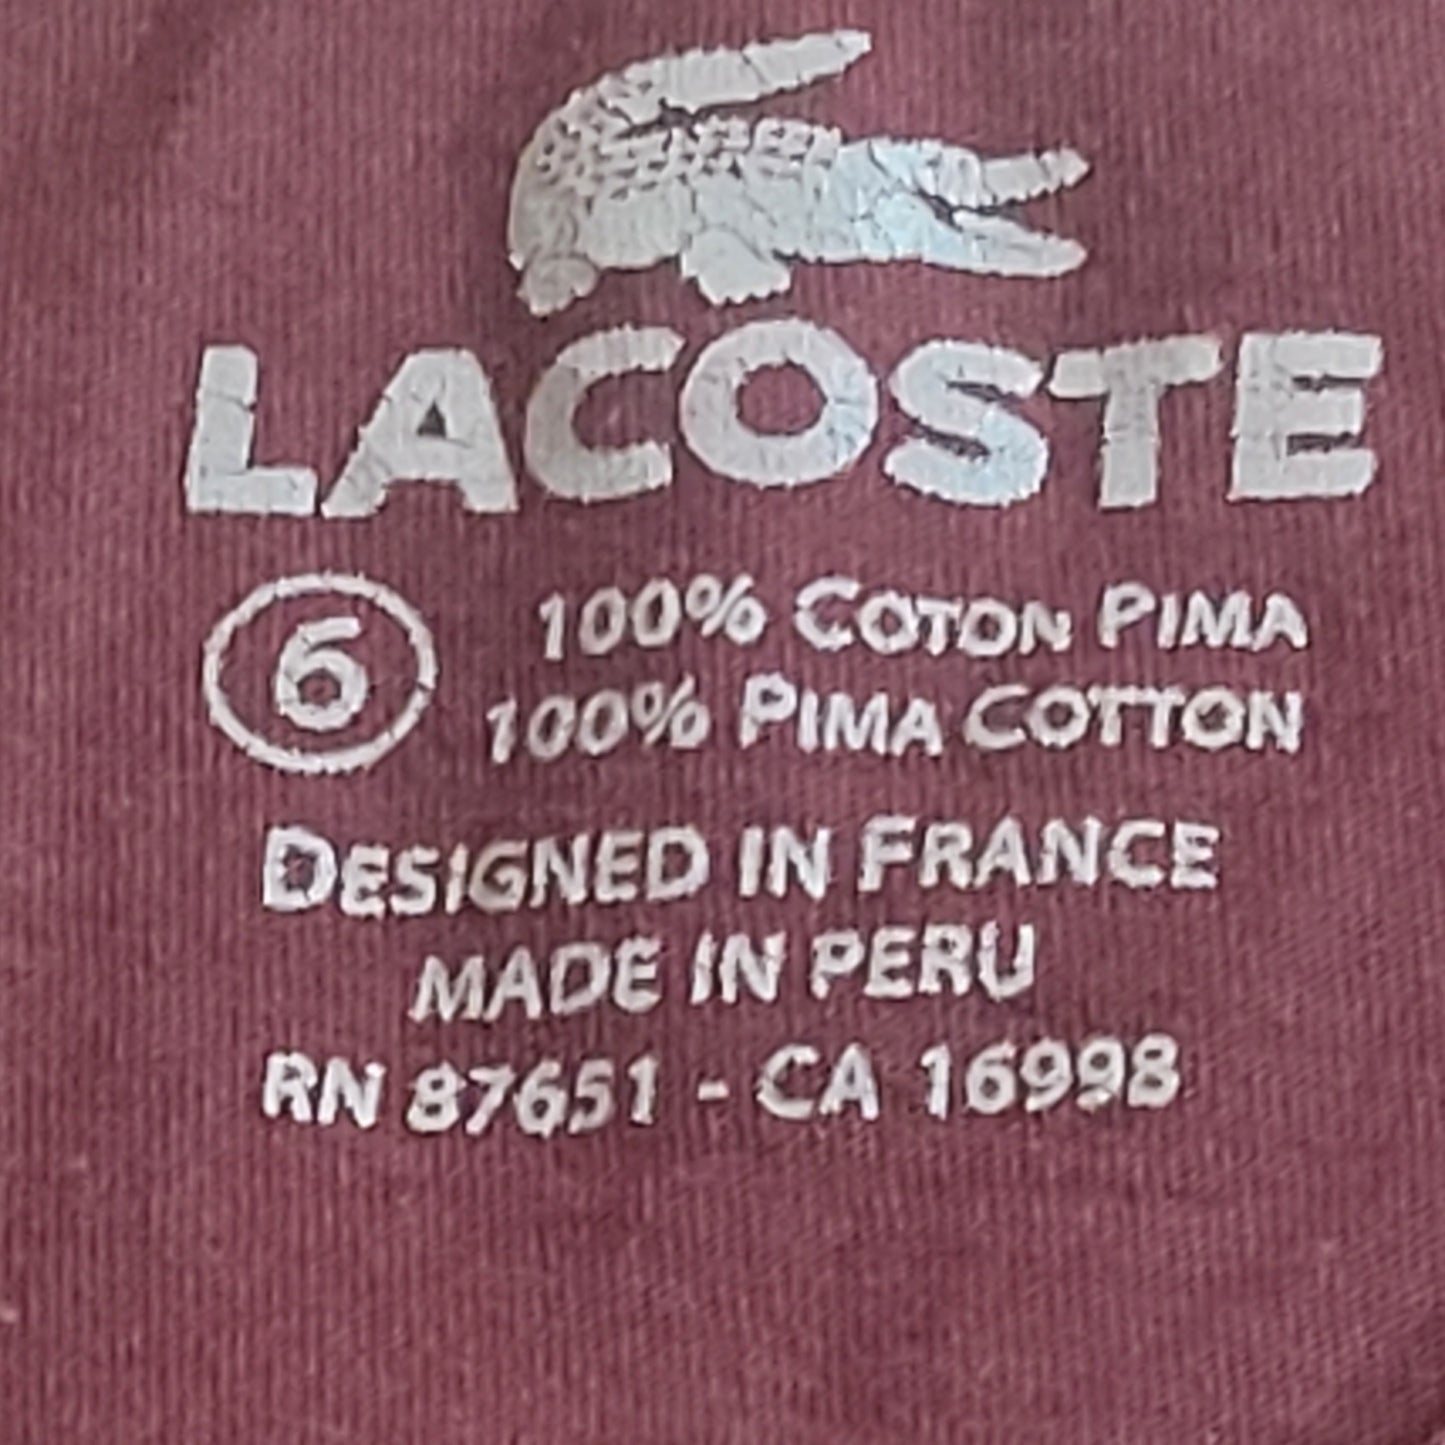 Lacoste Long Sleeve Shirt Burgundy - Large